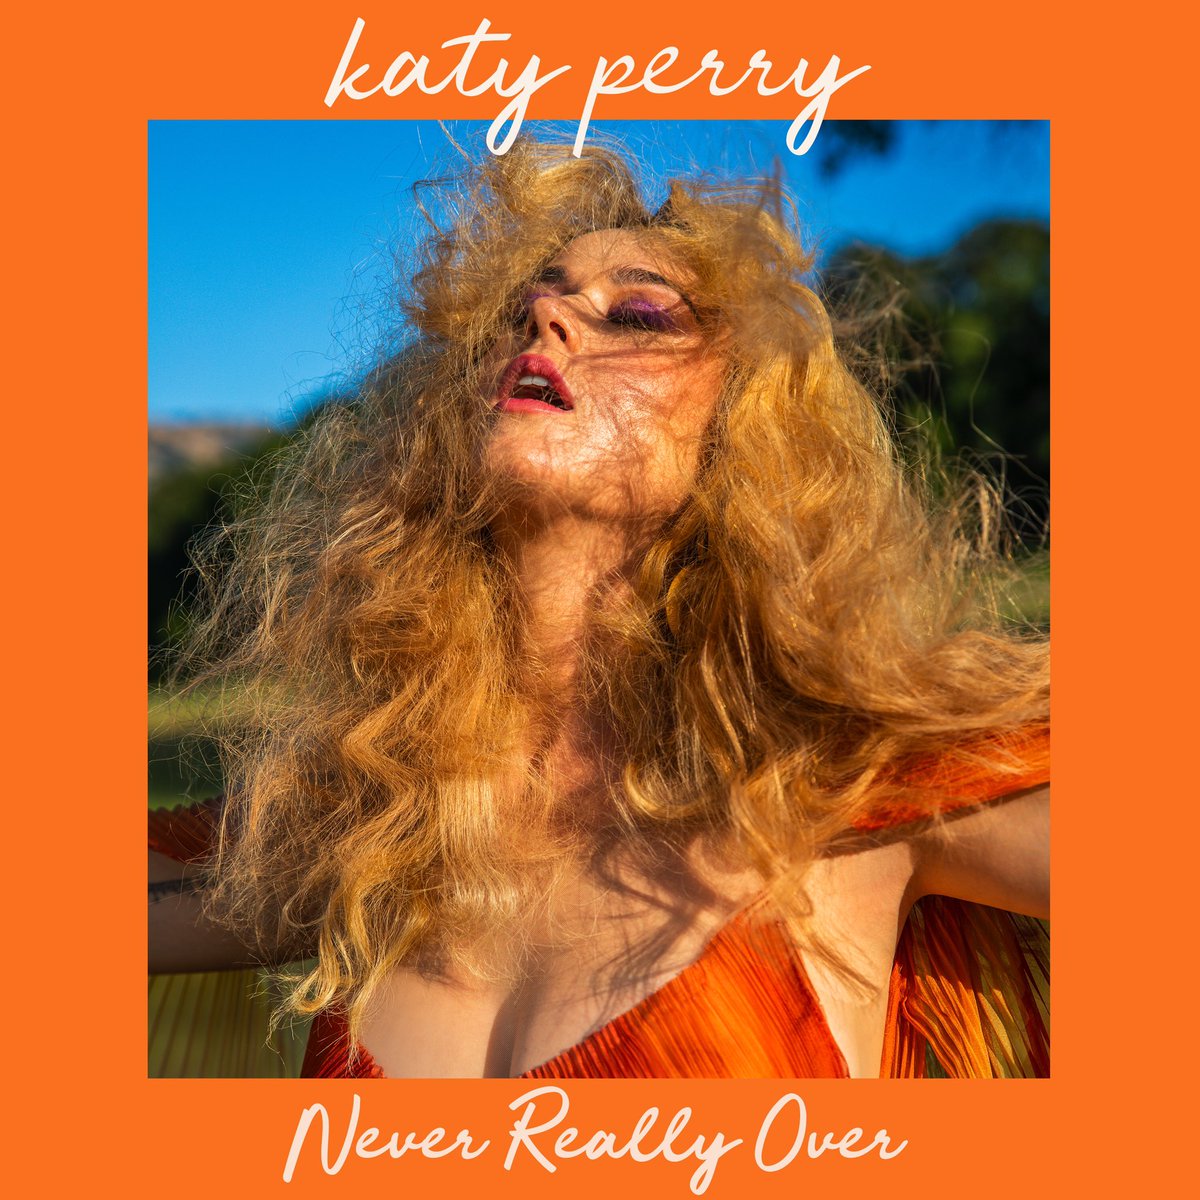 Katy Perry anuncia 'Never Really Over', nuevo single